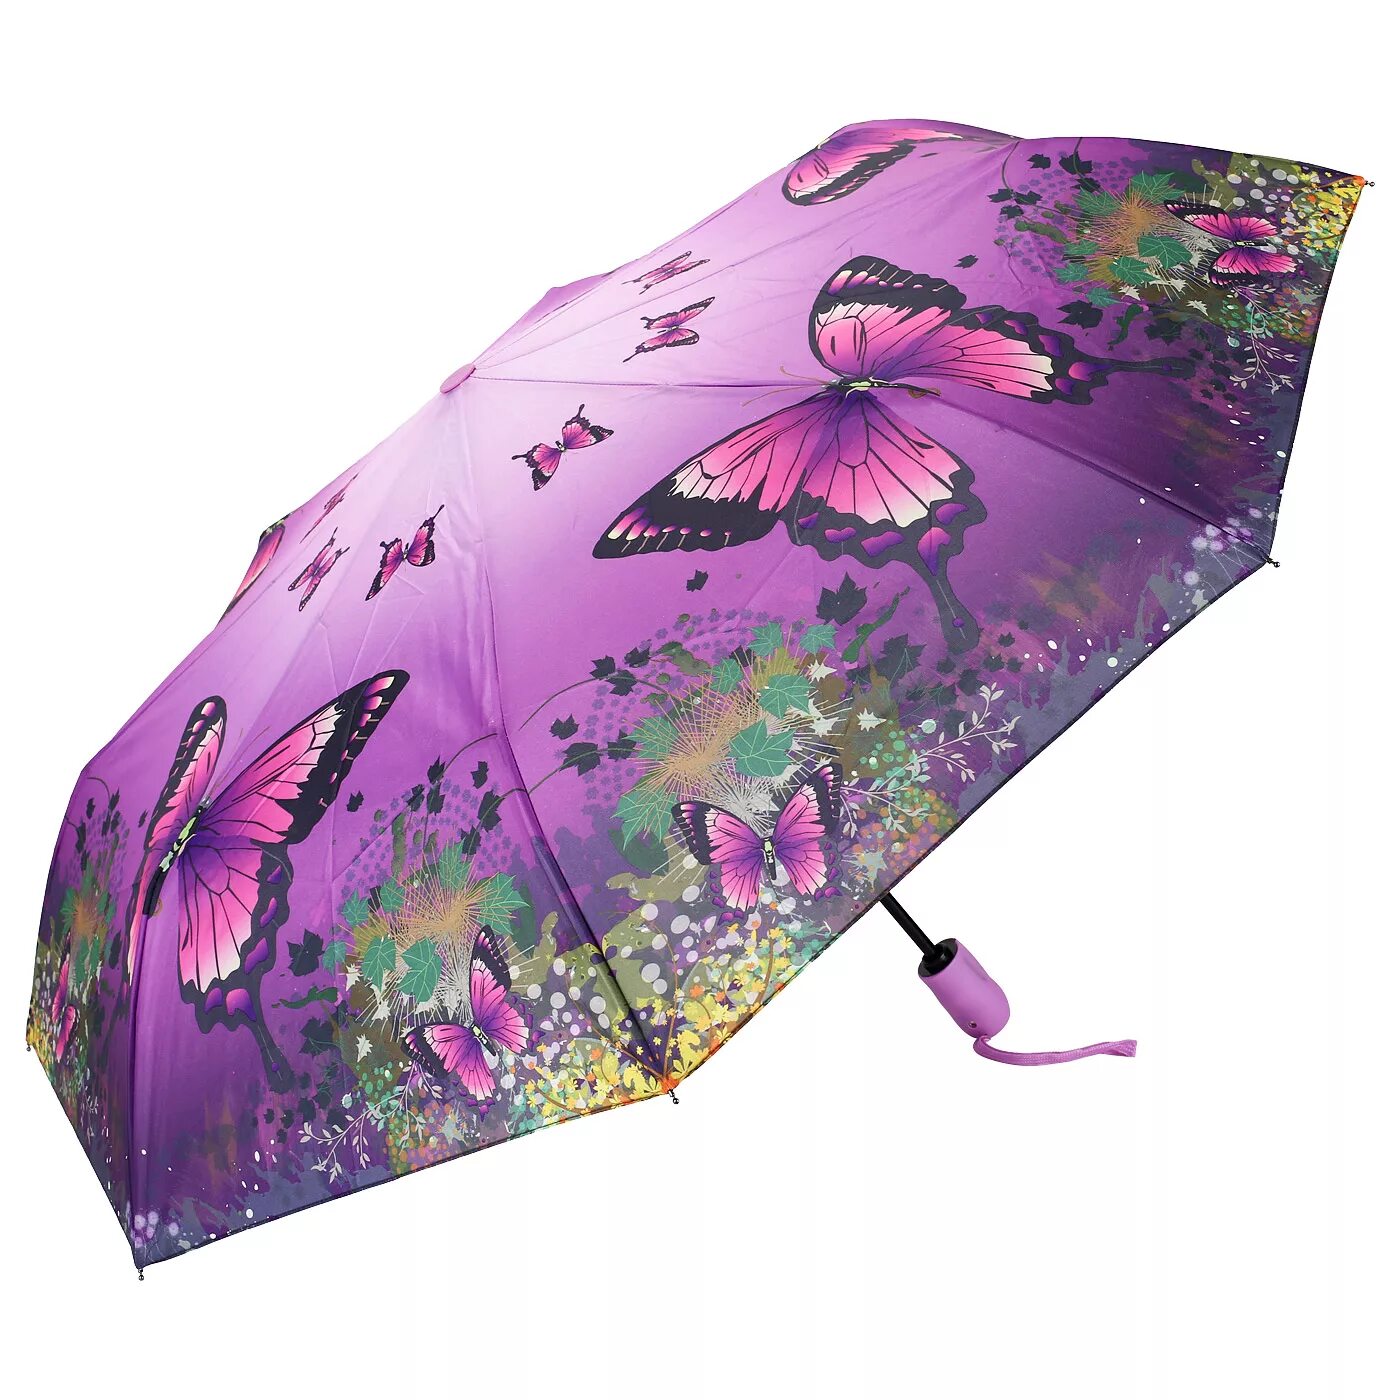 Купить зонт женский на озон. Trust 32472 зонт бабочки. Francesco Marconi зонты женские. Озон зонты женские. Зонты женские с бабочками.